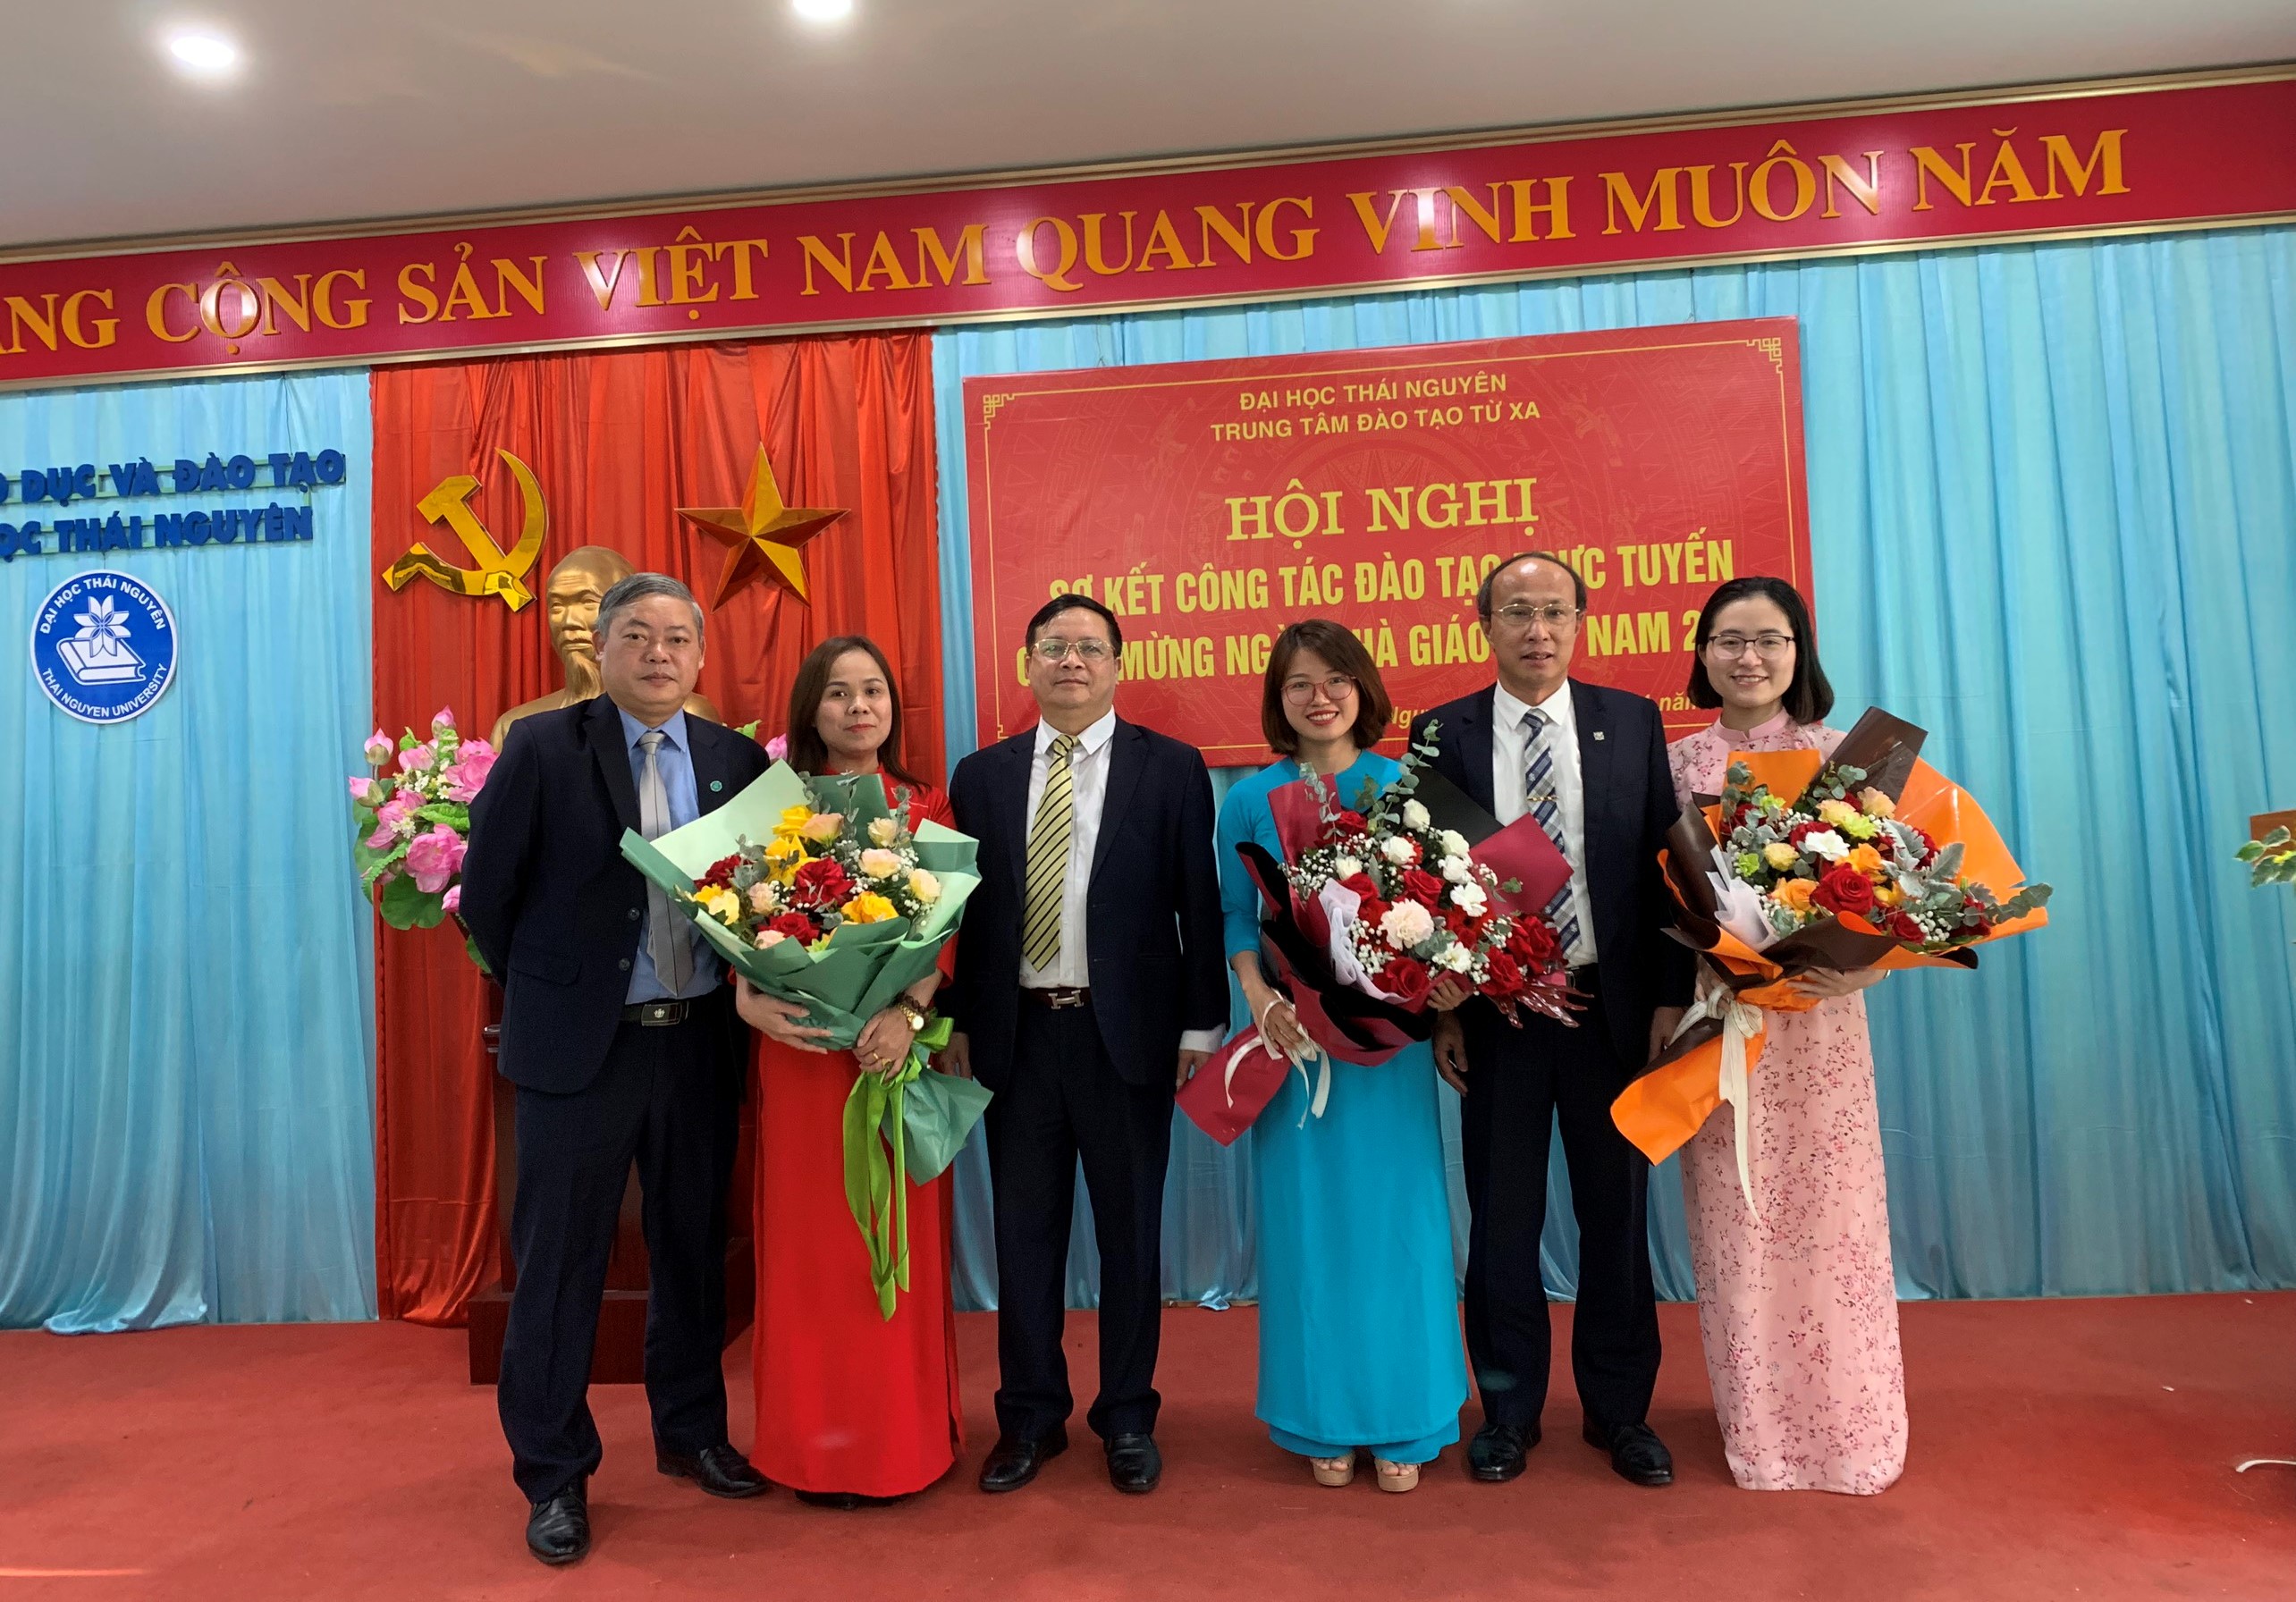 Trung tâm Đào tạo Từ xa Đại học Thái Nguyên sơ kết công tác đào tạo trực tuyến và chào mừng ngày Nhà giáo Việt Nam